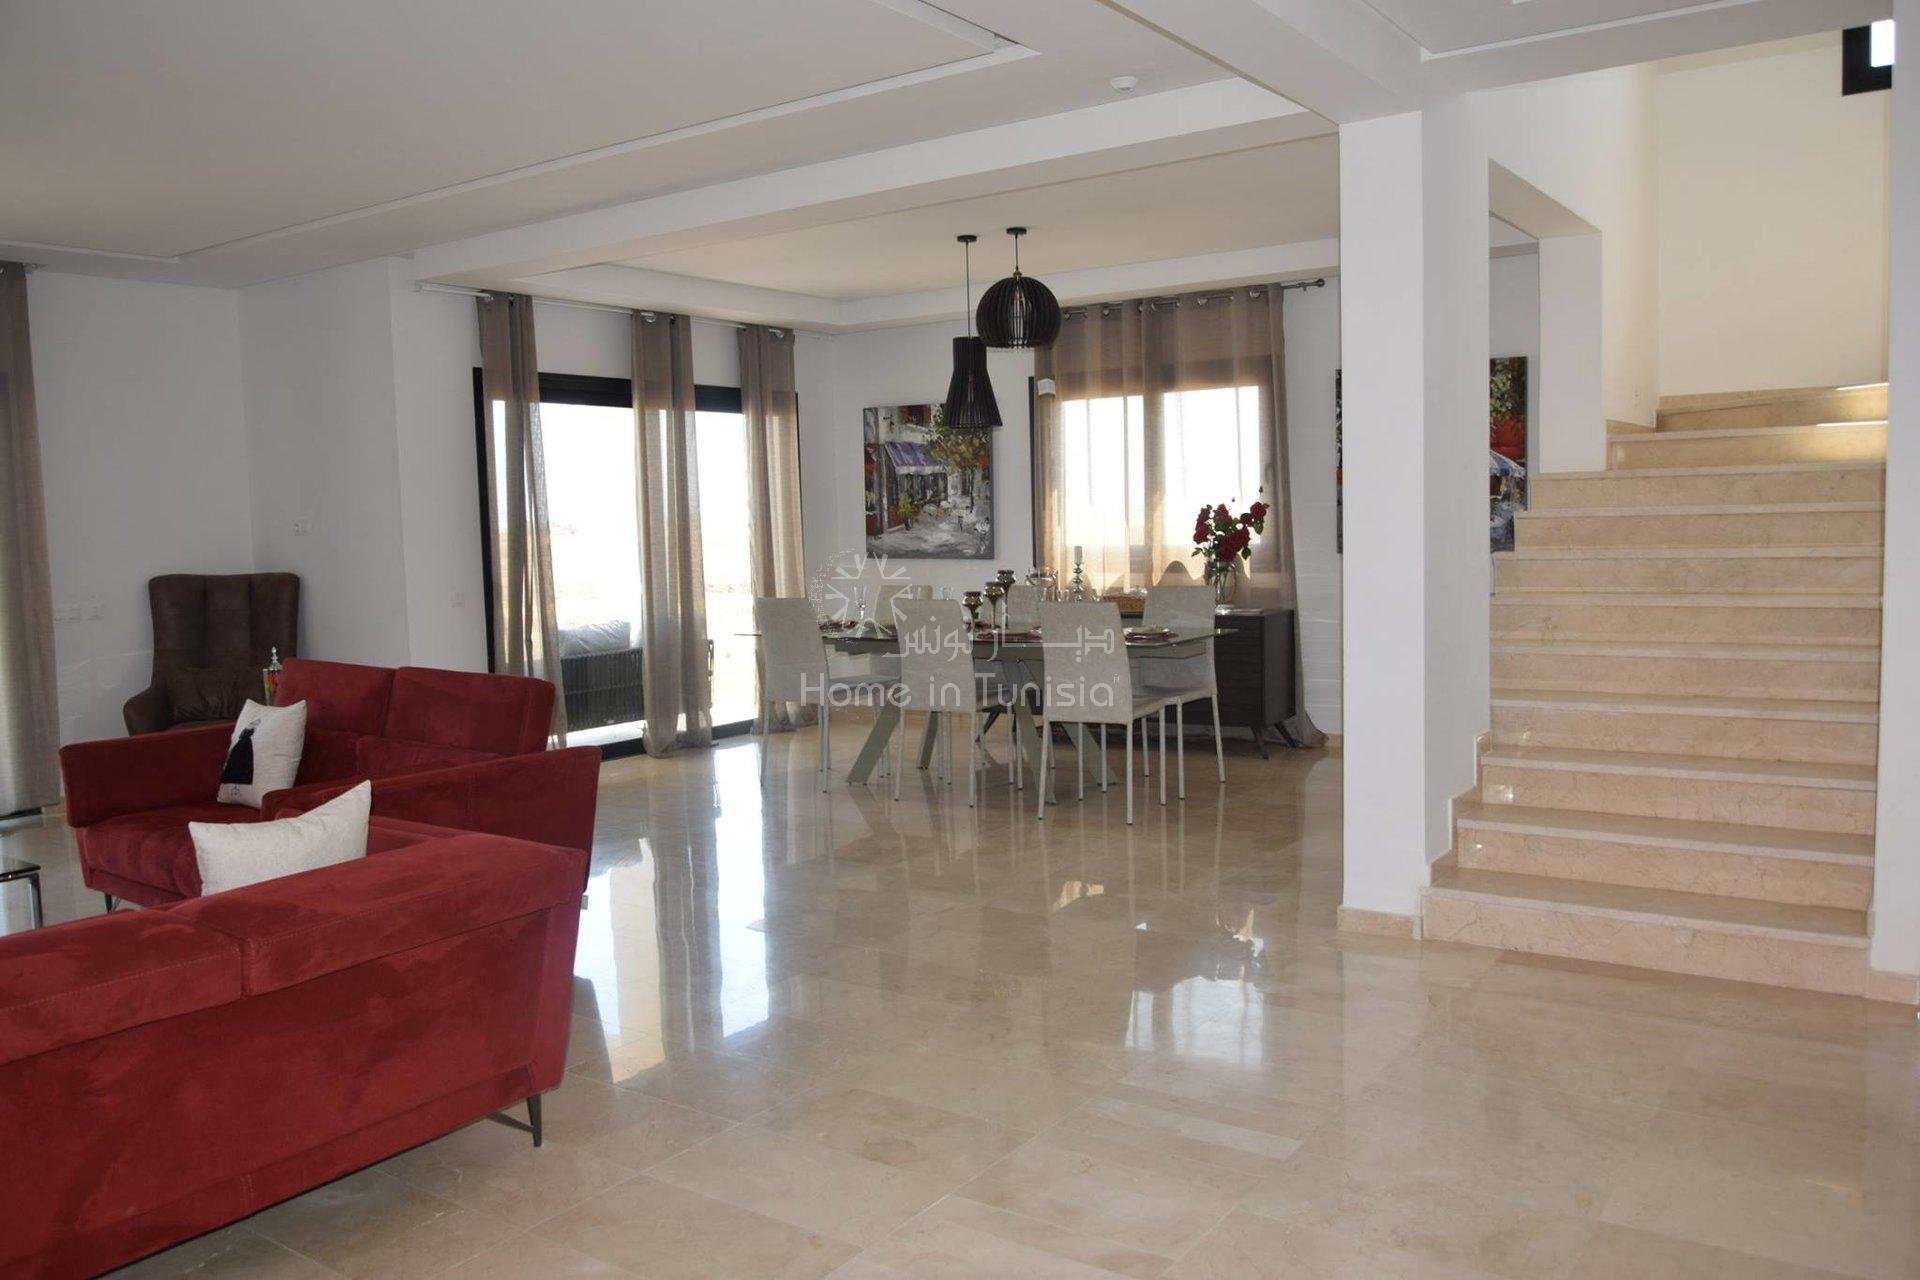 Investir dans villa golf Aphrodite isolée a Tunis Bay résidence d'affaires de tourisme et de services